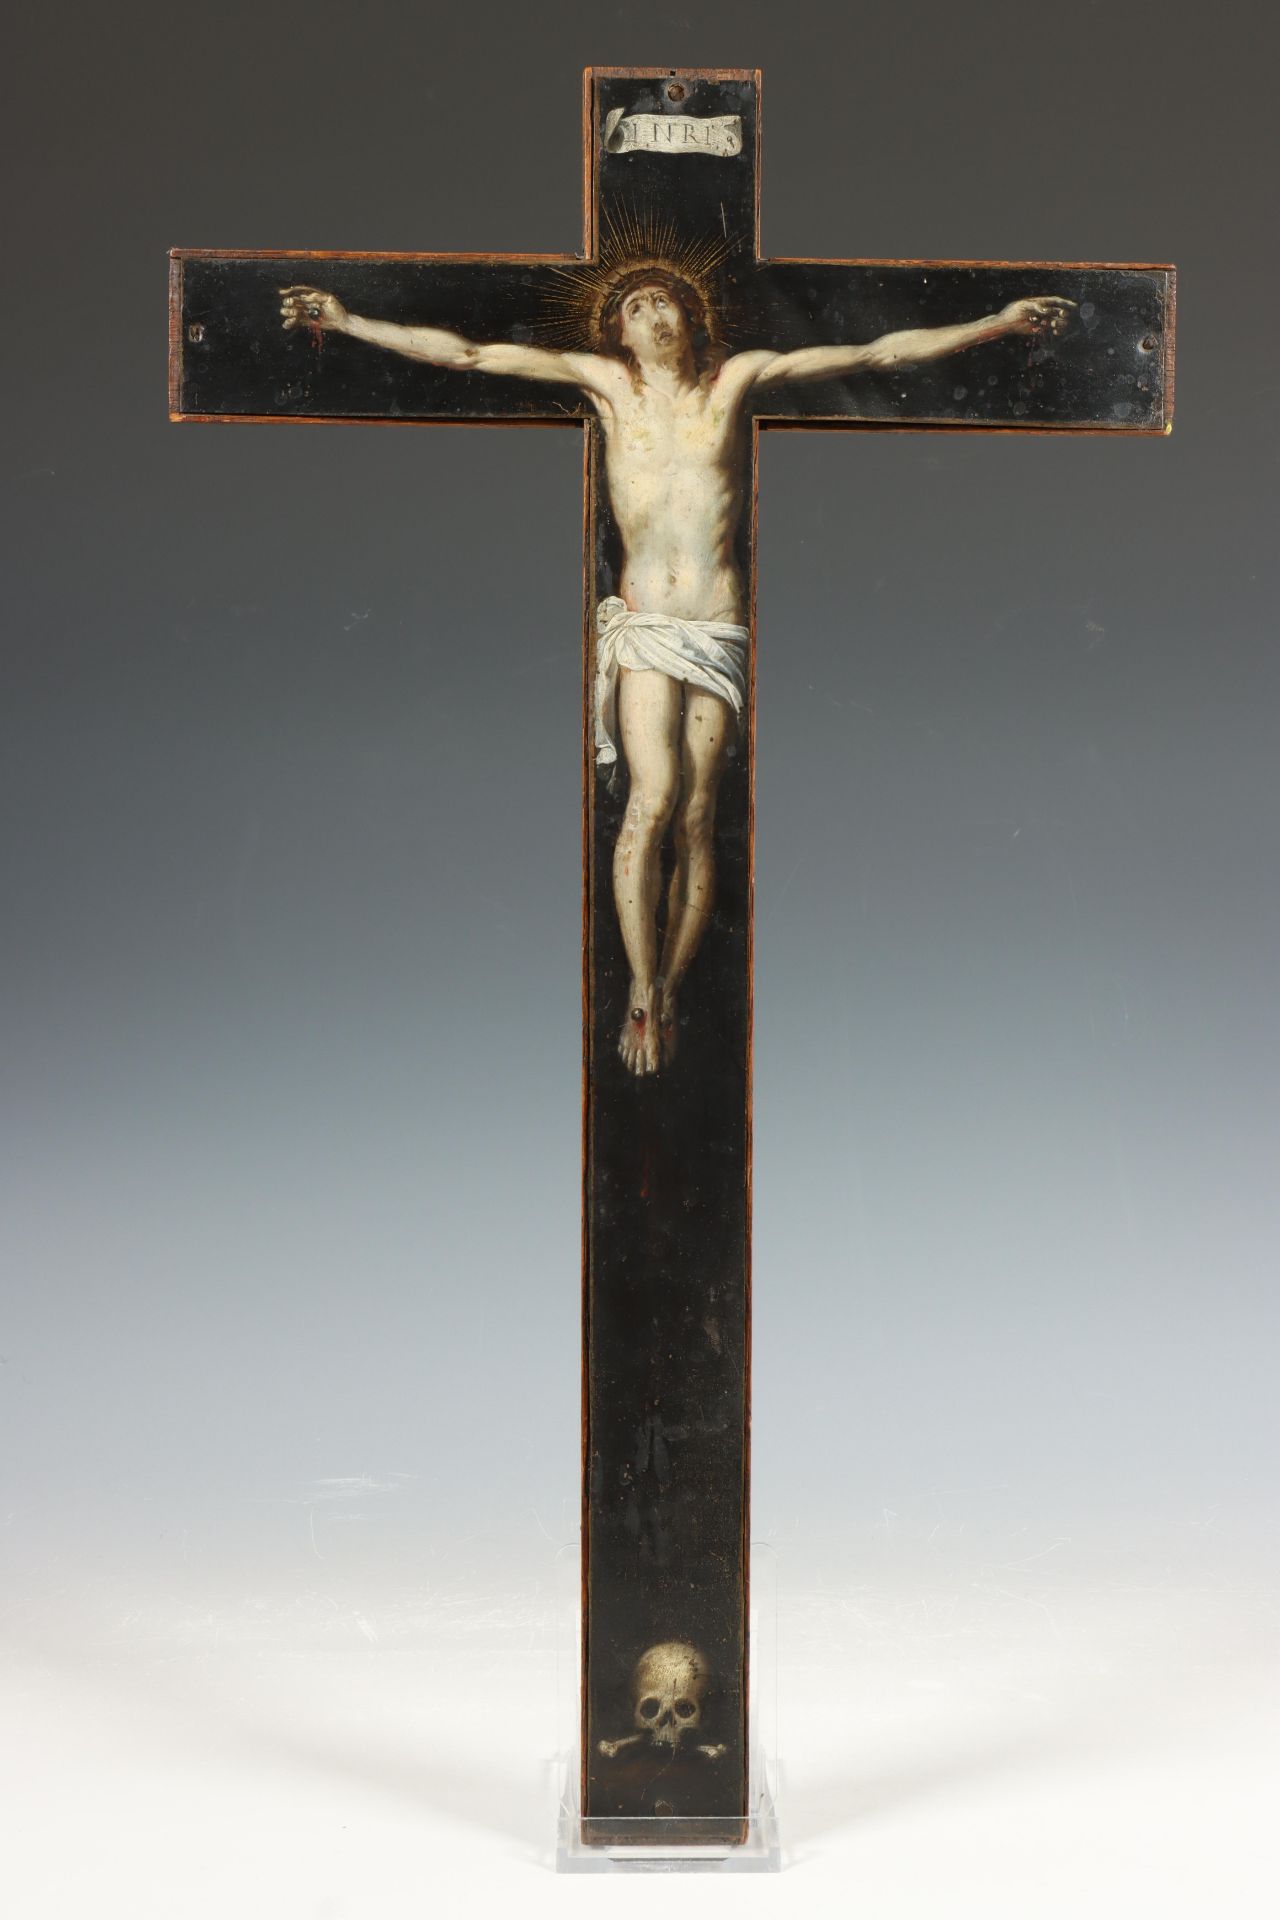 Vlaamse School, op koper geschilderde crucifix, 17e eeuw.